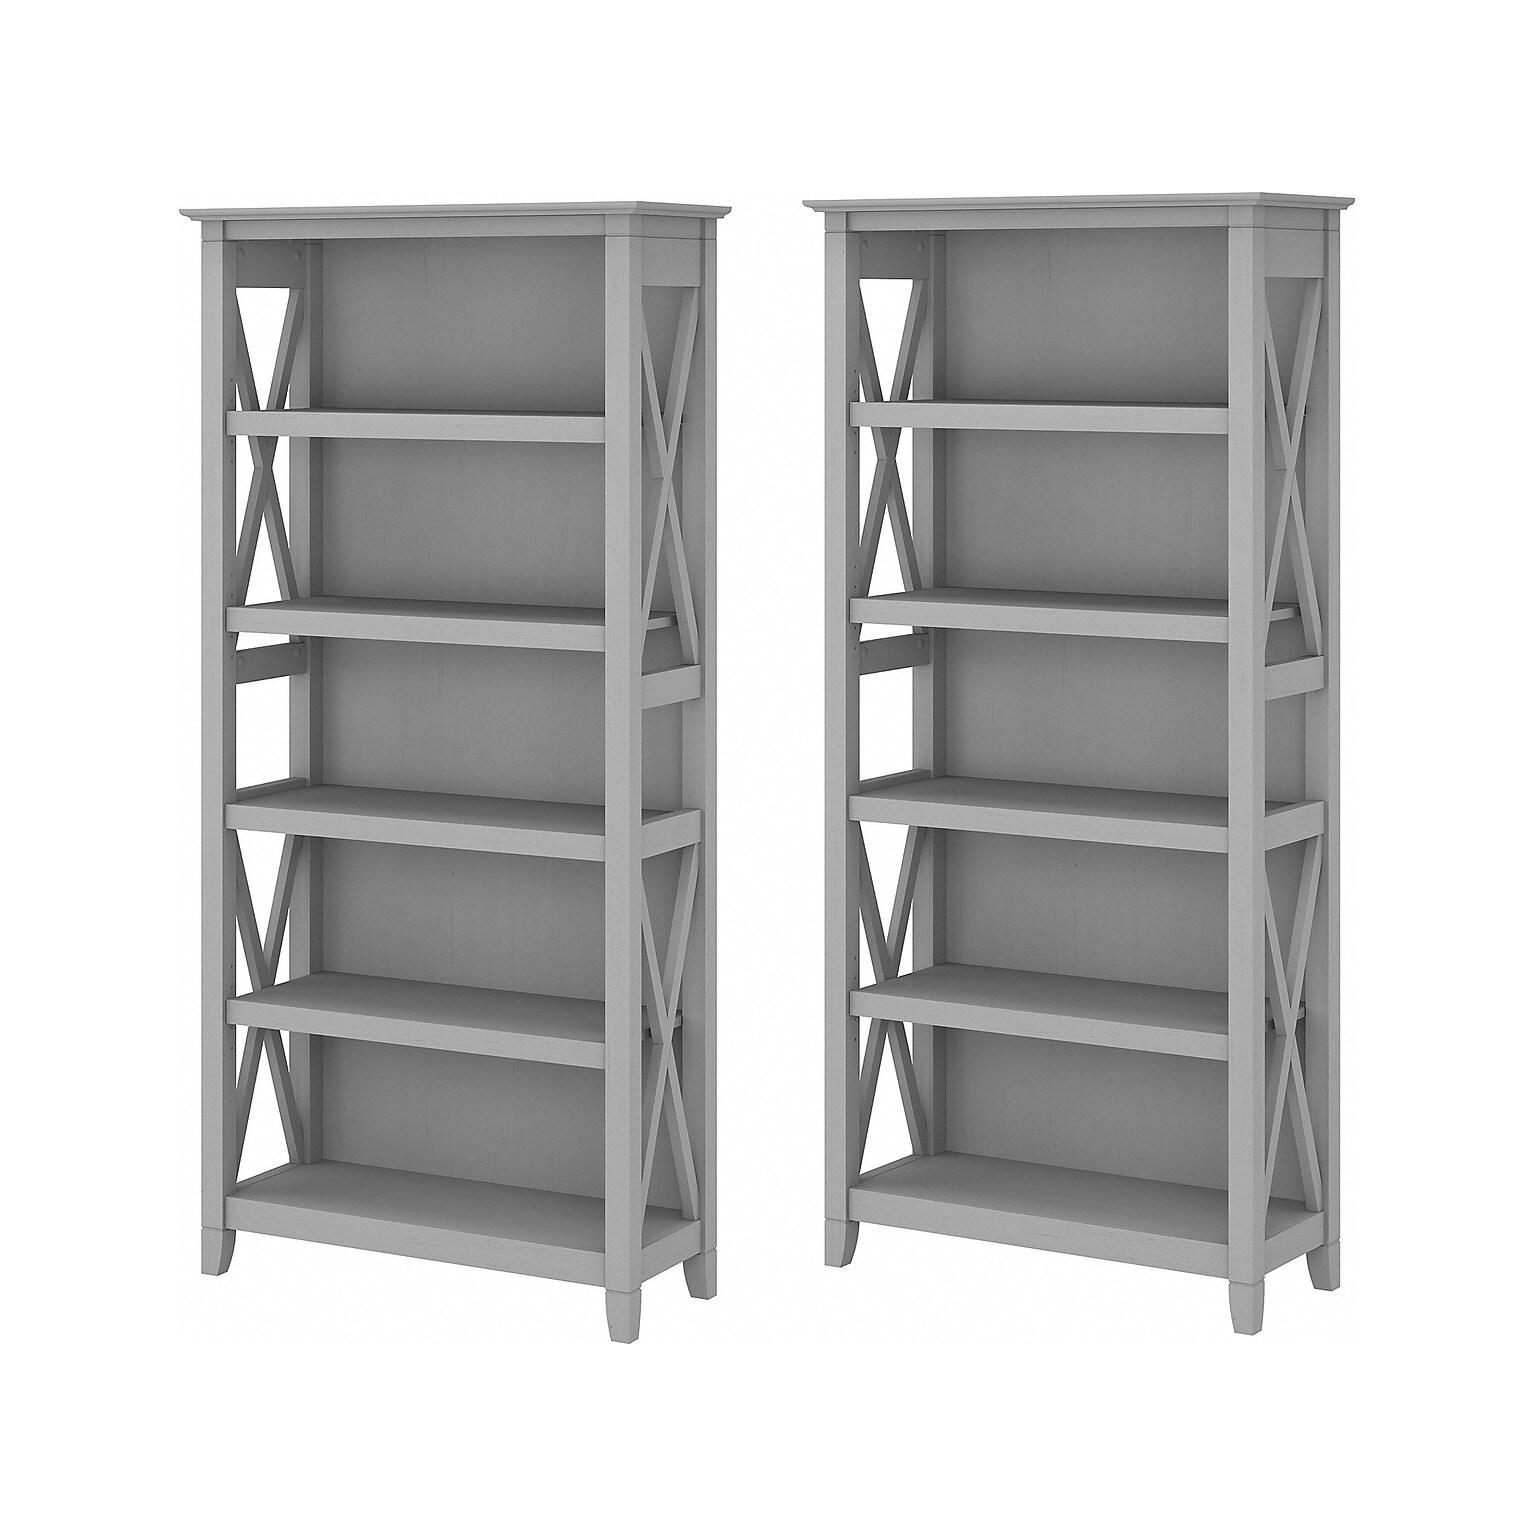 Bush Furniture Key West 66H 5-Shelf Bookcase with Adjustable Shelves, Cape Cod Gray Laminated Wood, 2/Set (KWS046CG)